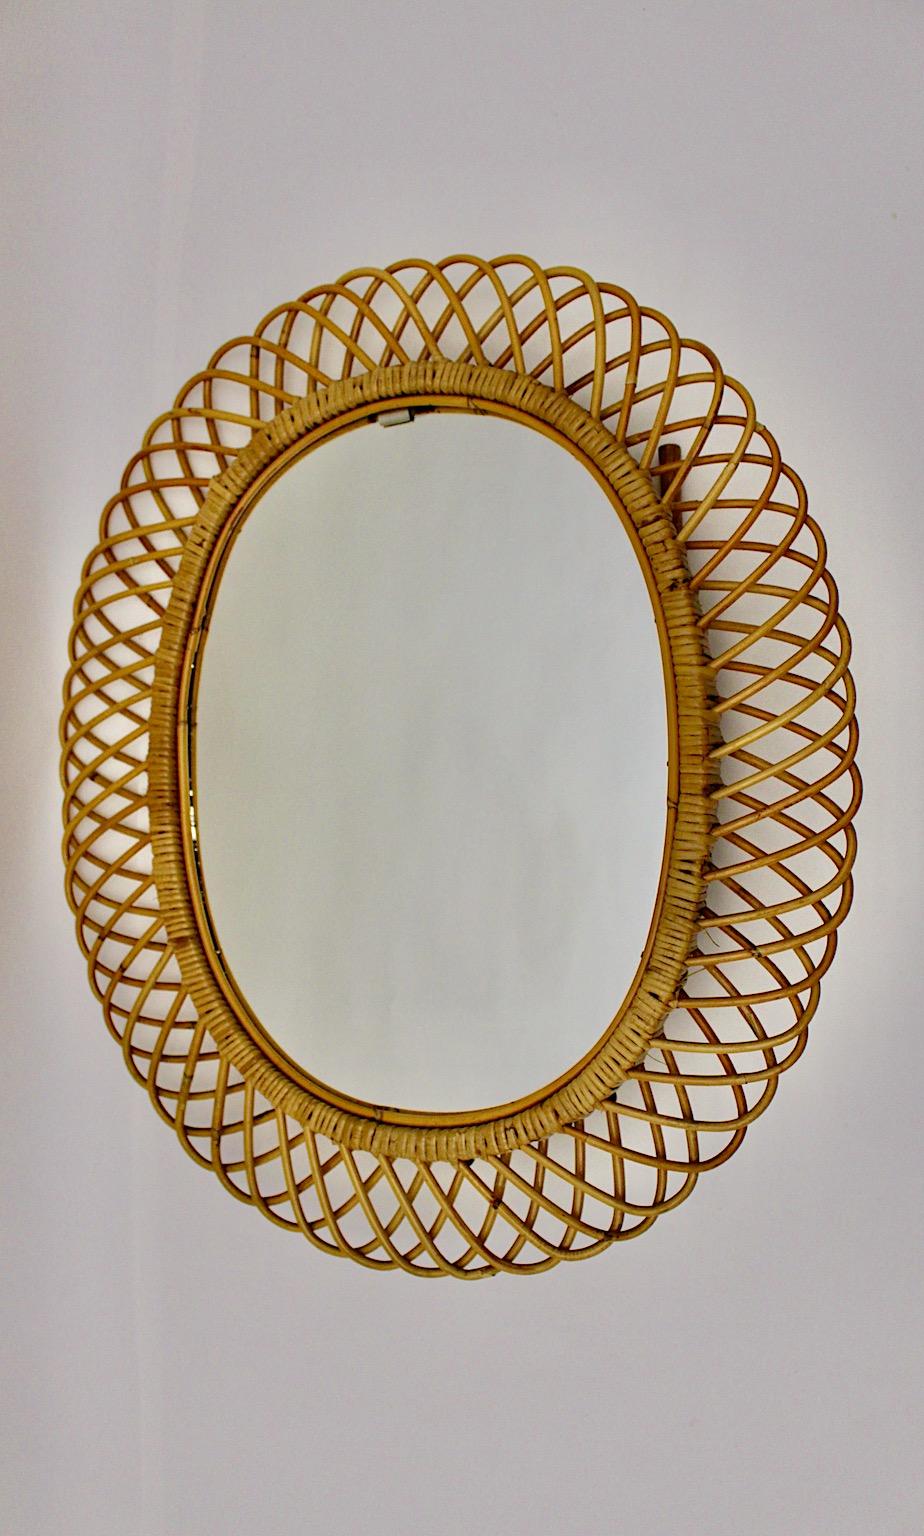 Italian Mid-Century Modern Vintage Oval Sunburst Mirror Wall Mirror Rattan, Italy, 1960s For Sale